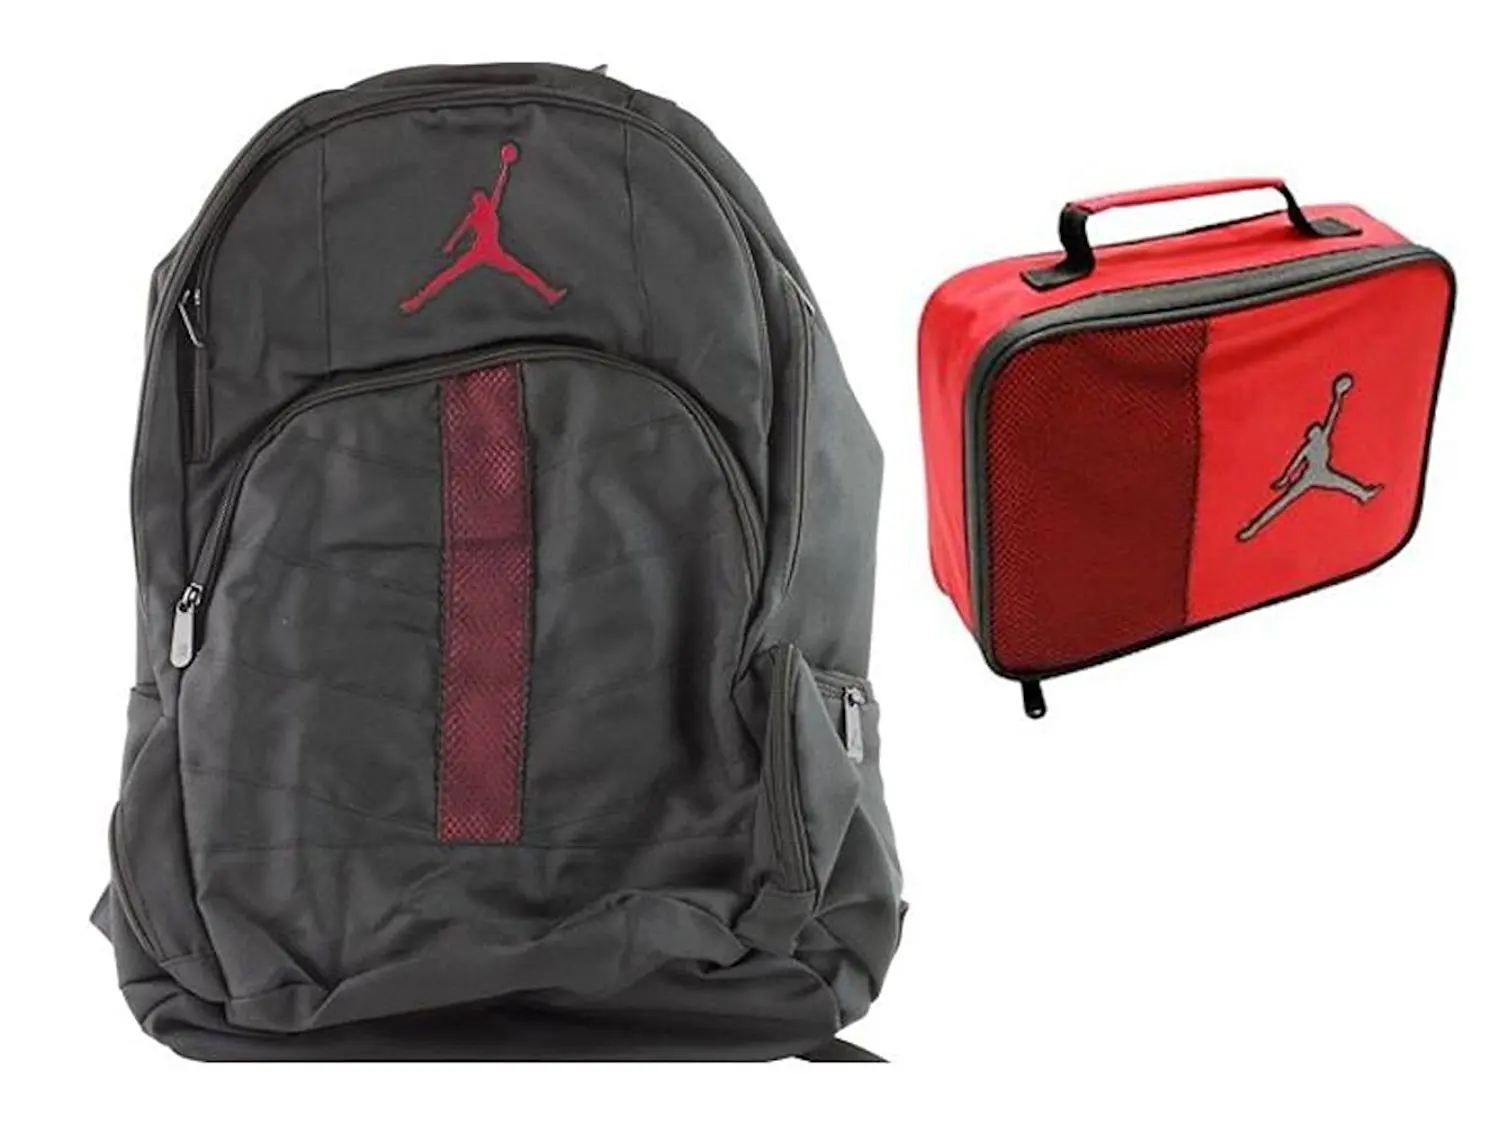 where can i buy a jordan backpack